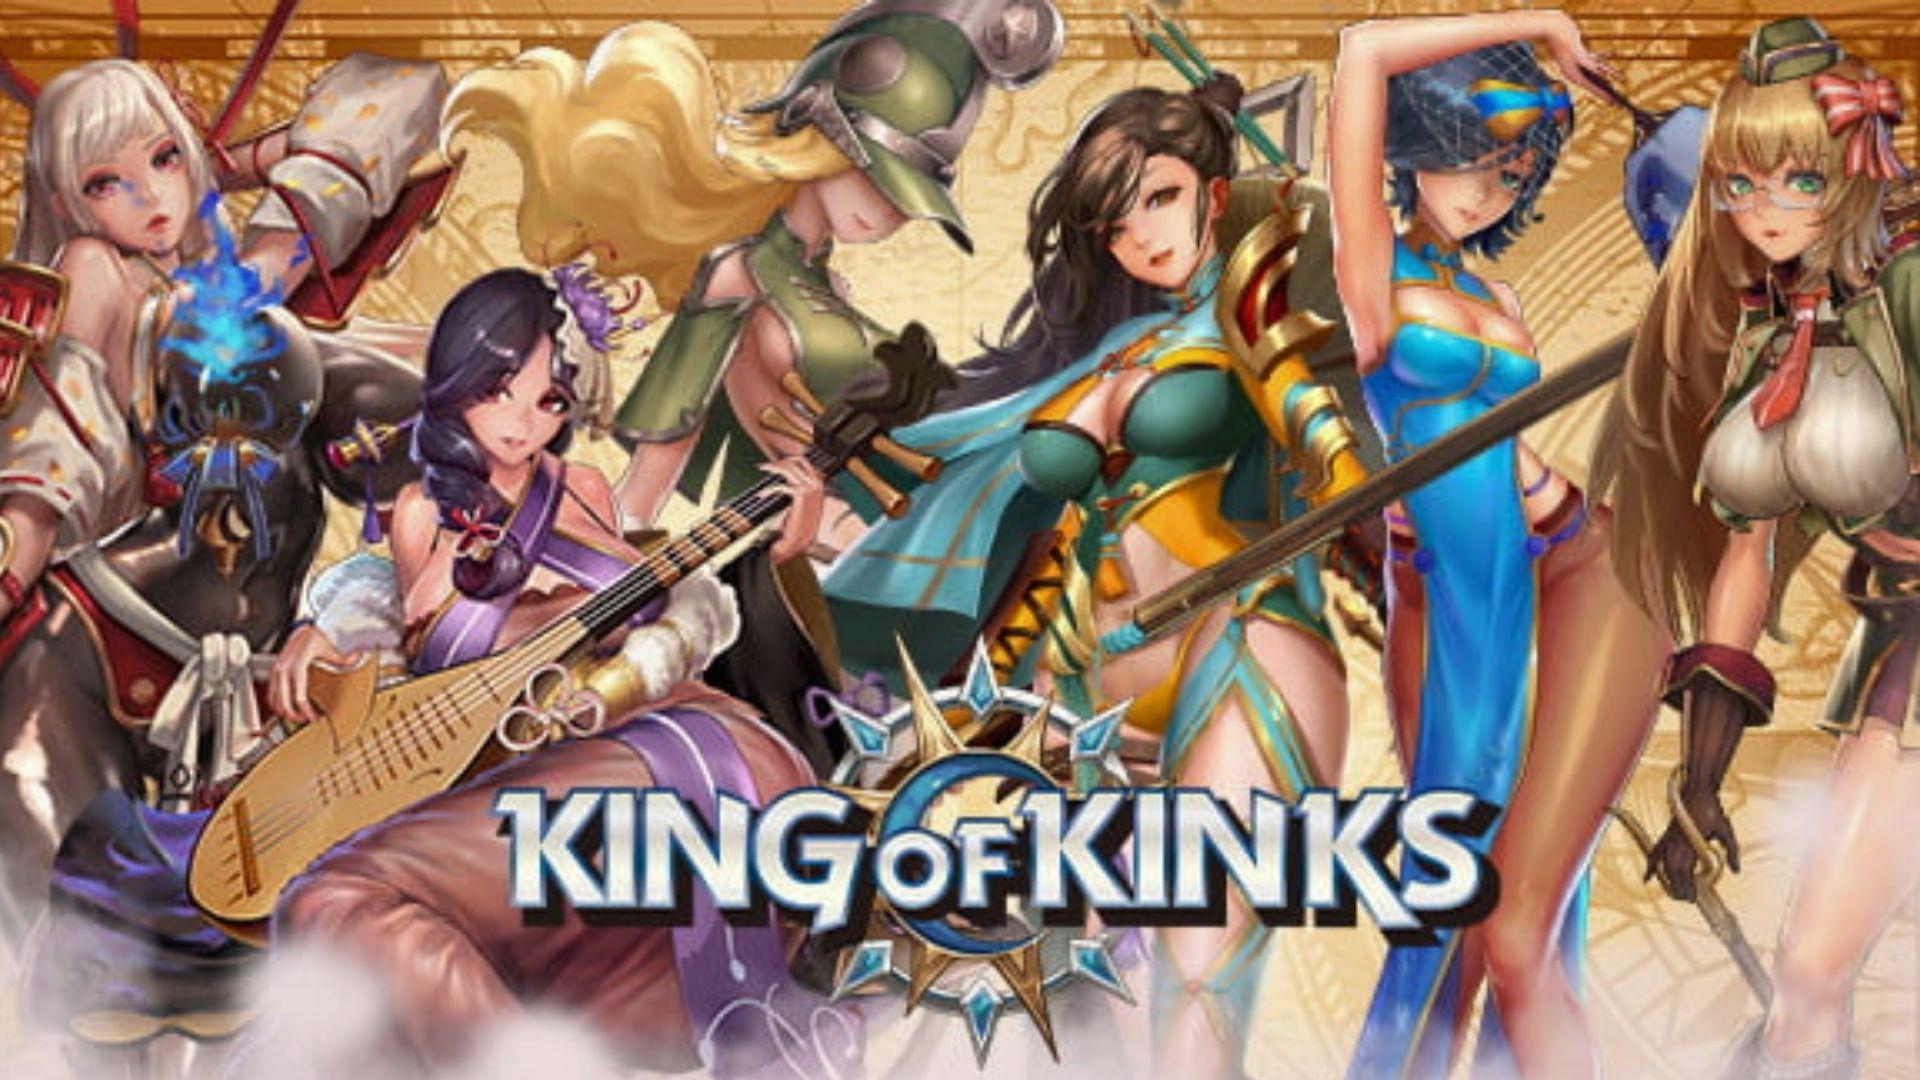 King of kinks gameplay